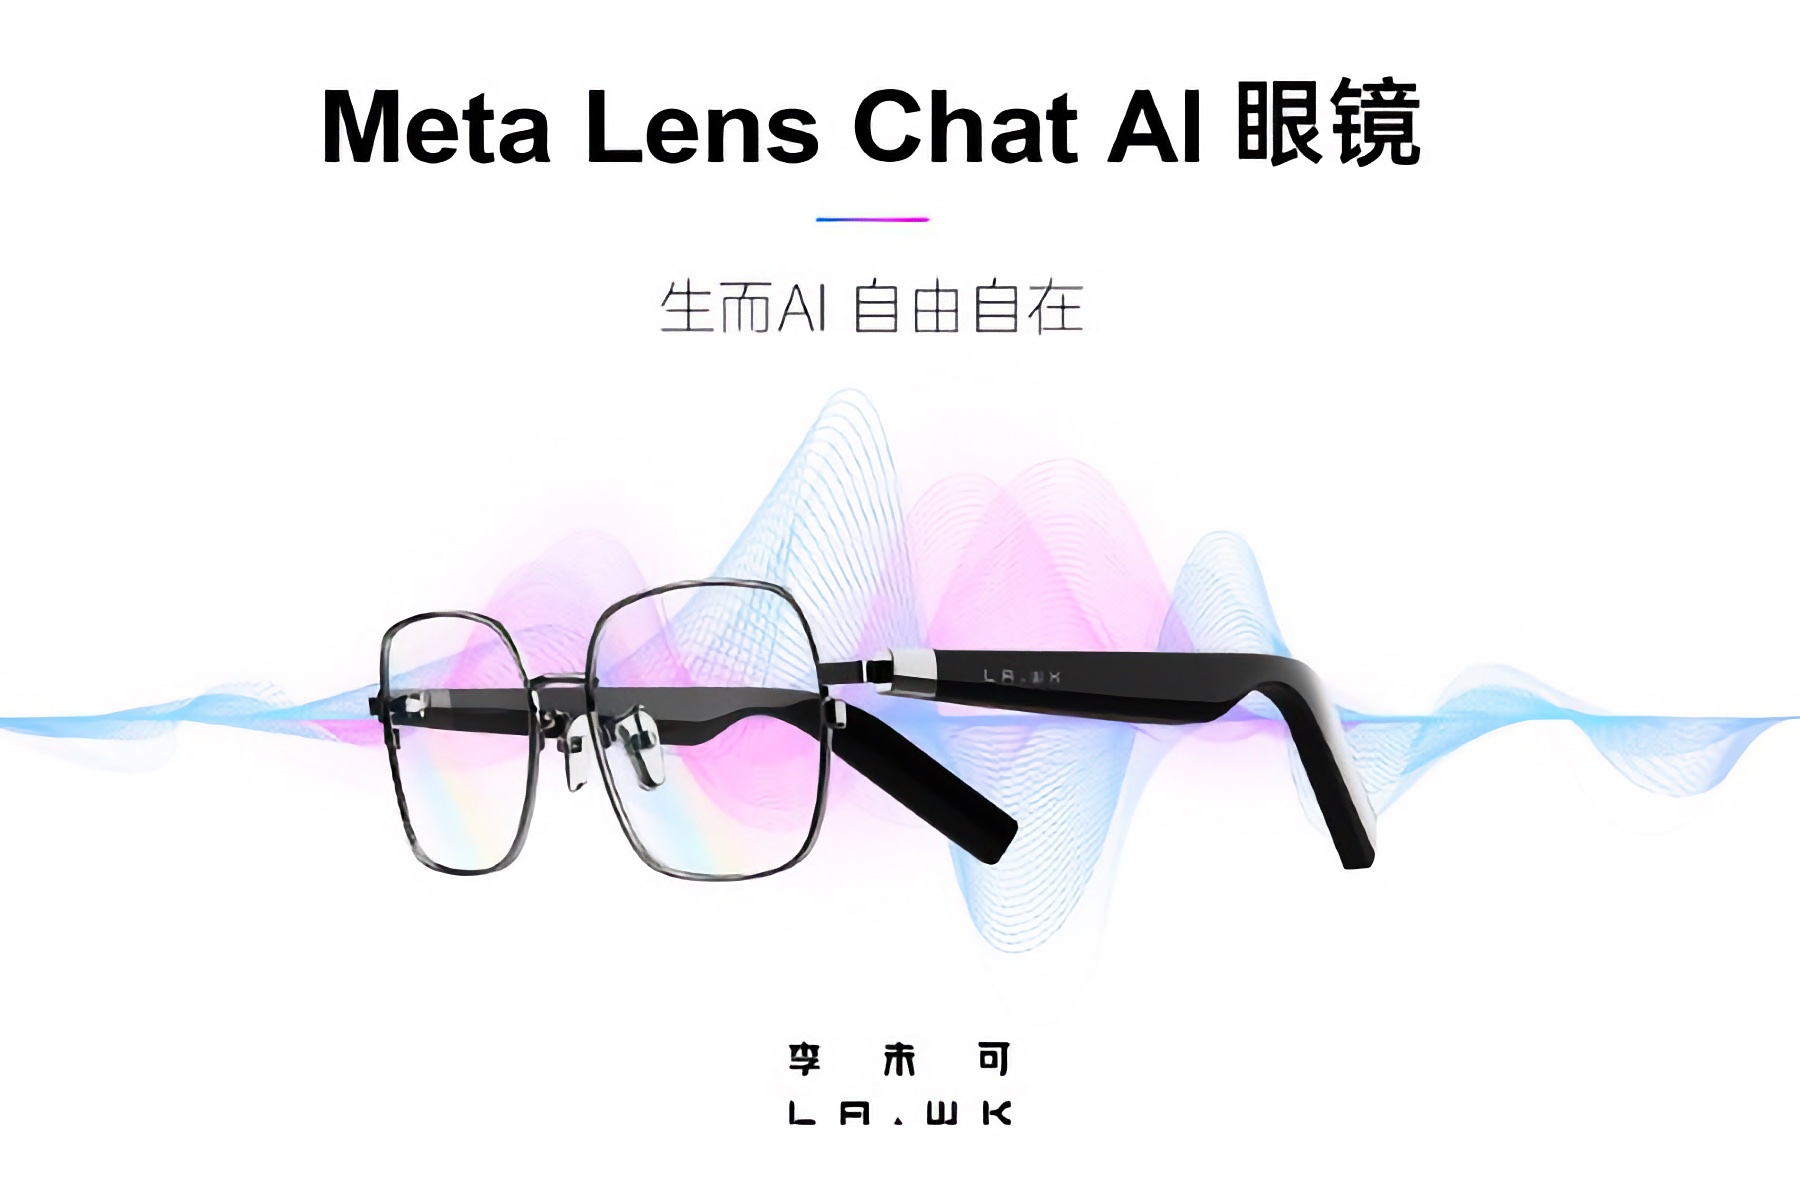 【评测】699 元的 AI 眼镜，能导航、翻译还能聊天